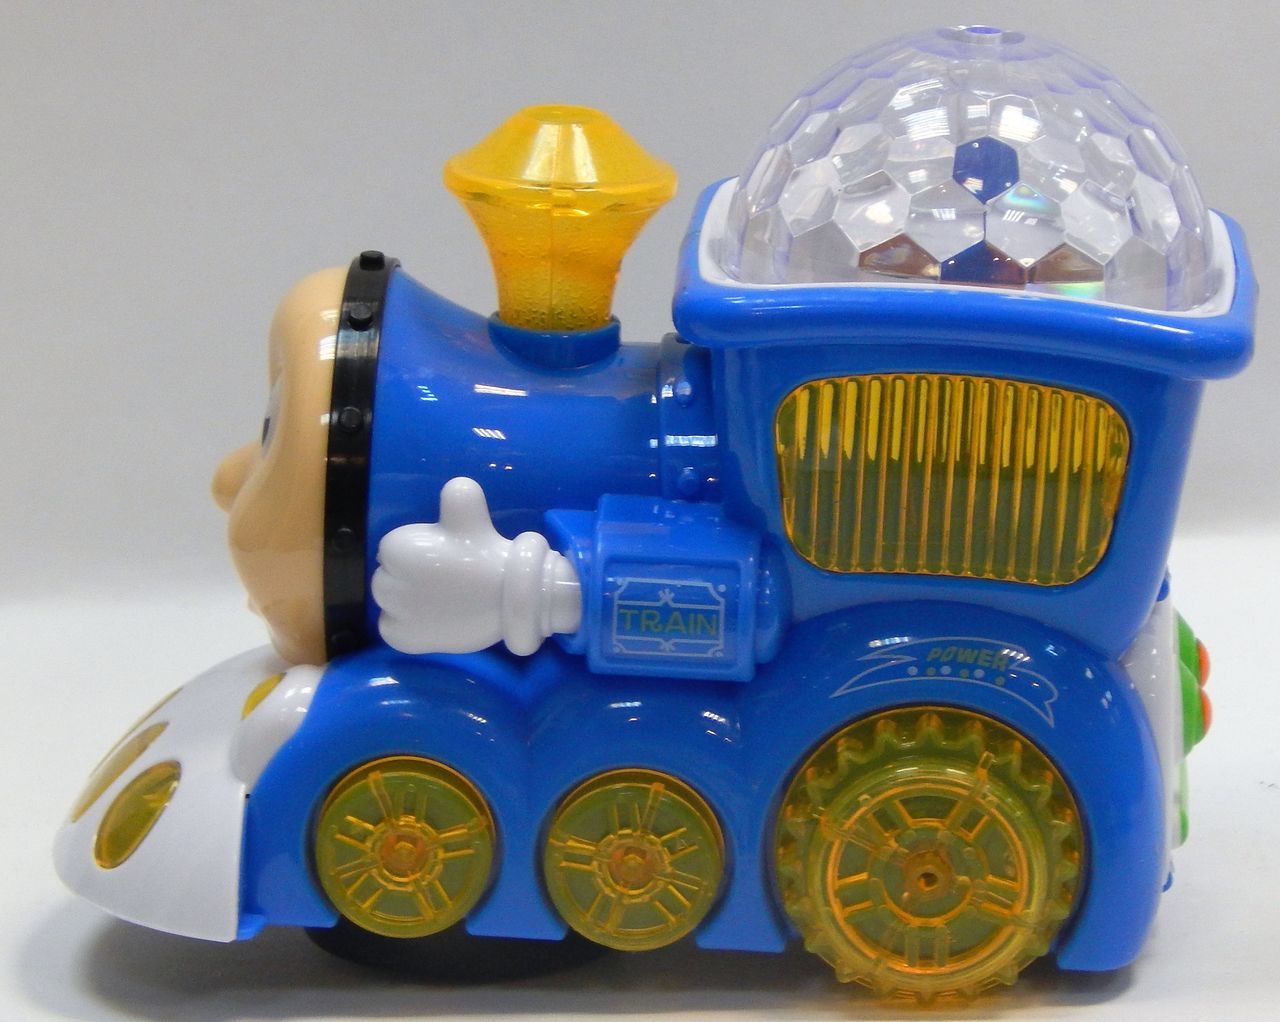 8(499)9387578 Купить игрушка паровозик-проектор light train "томас" red от 855 руб. - заказать